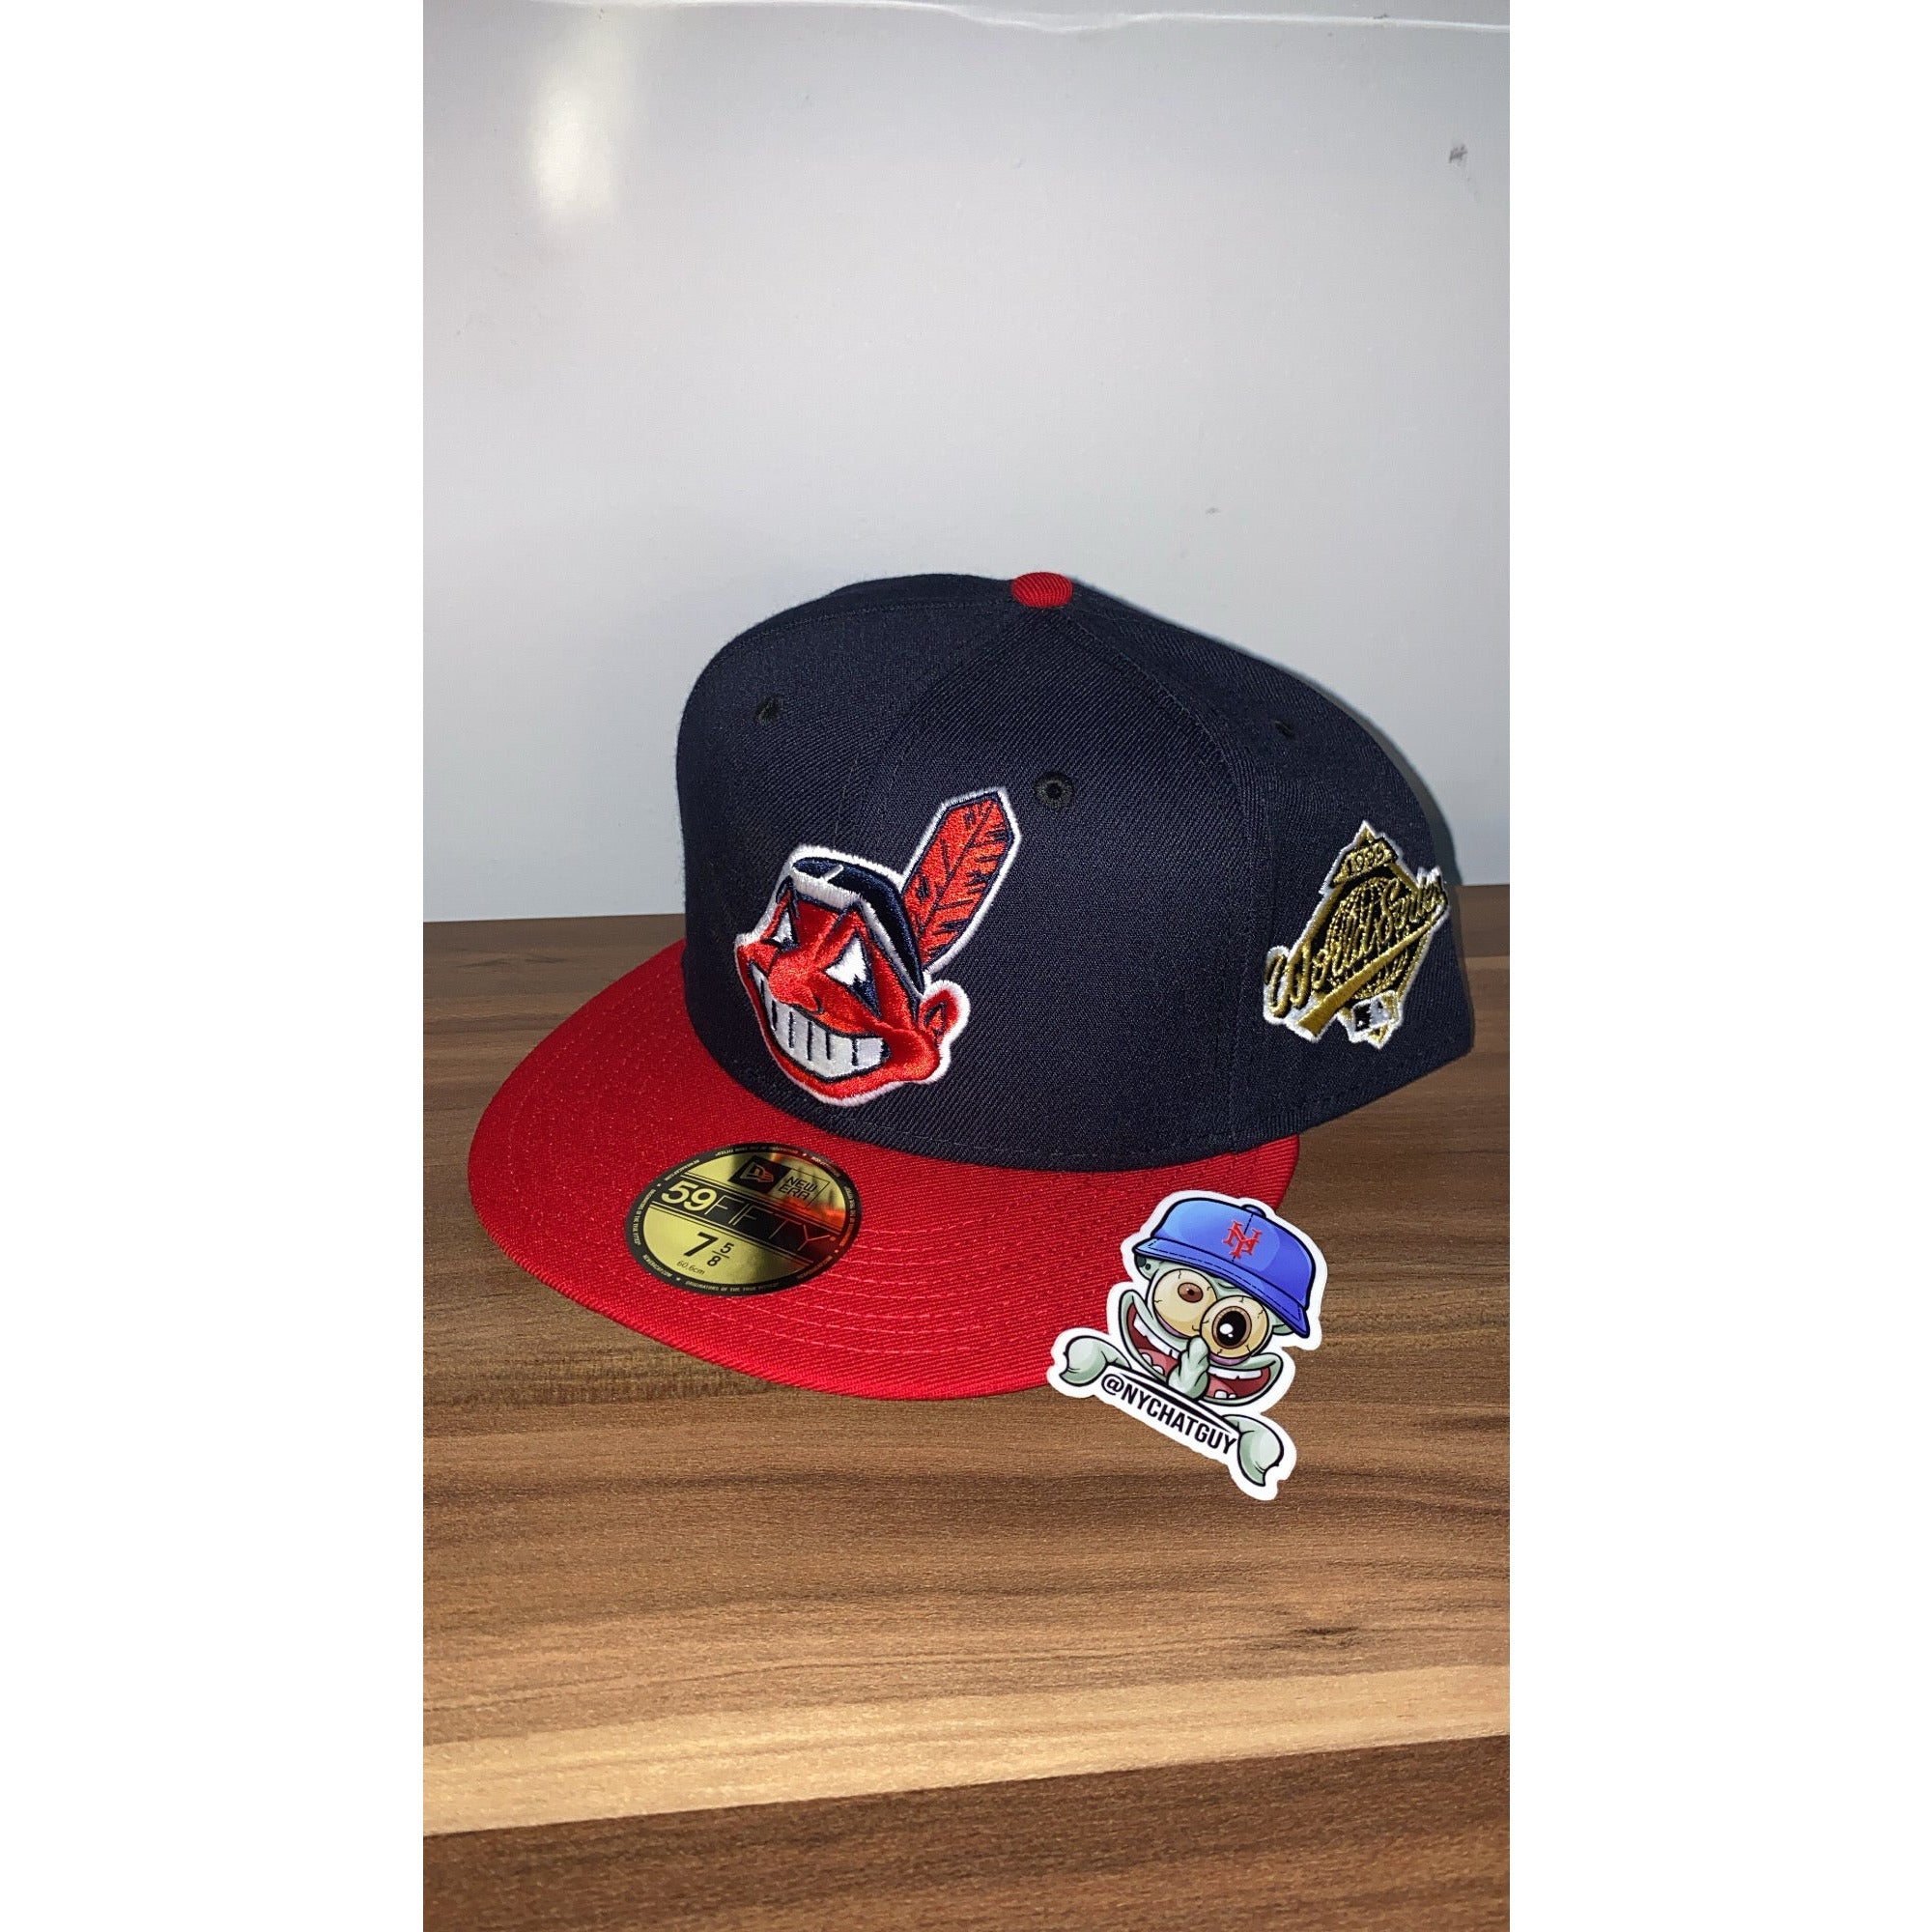 New Era 59fifty Cleveland Indians – Nychatguy